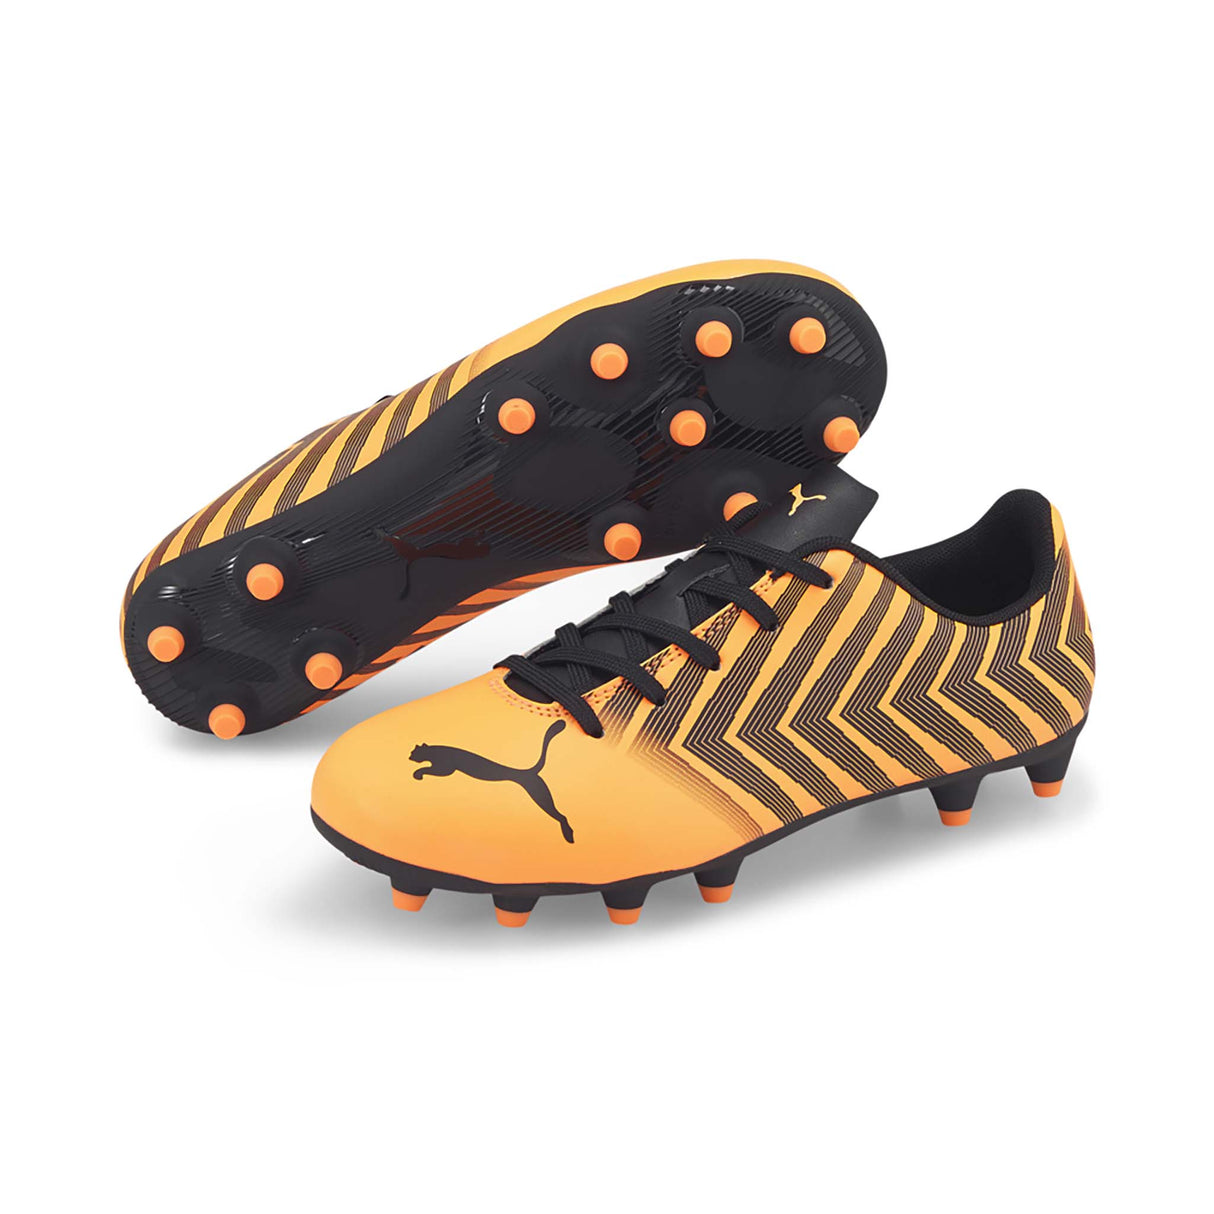 Puma Tacto II FG/AG Junior souliers soccer crampons orange noir enfant paire